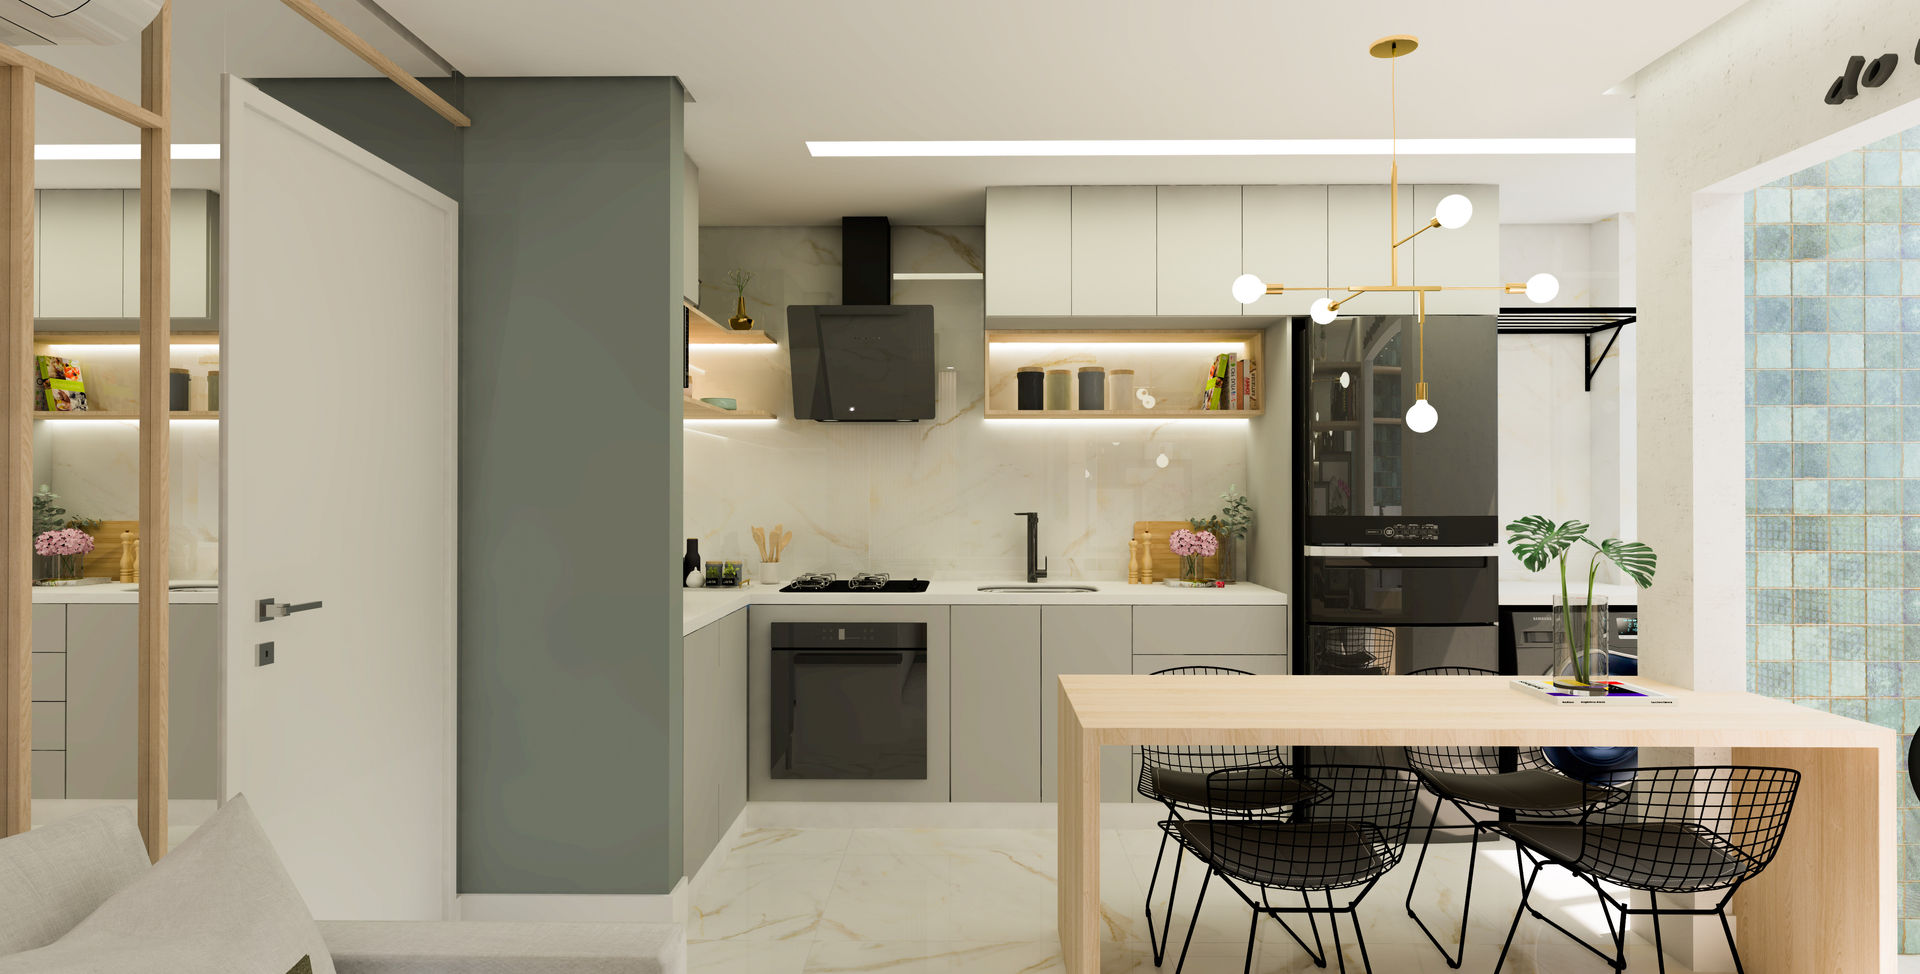 Cozinha totalmente Integrada ArquitetureSe - Projetos de Arquitetura e Interiores à distância Cozinhas pequenas Quartzo